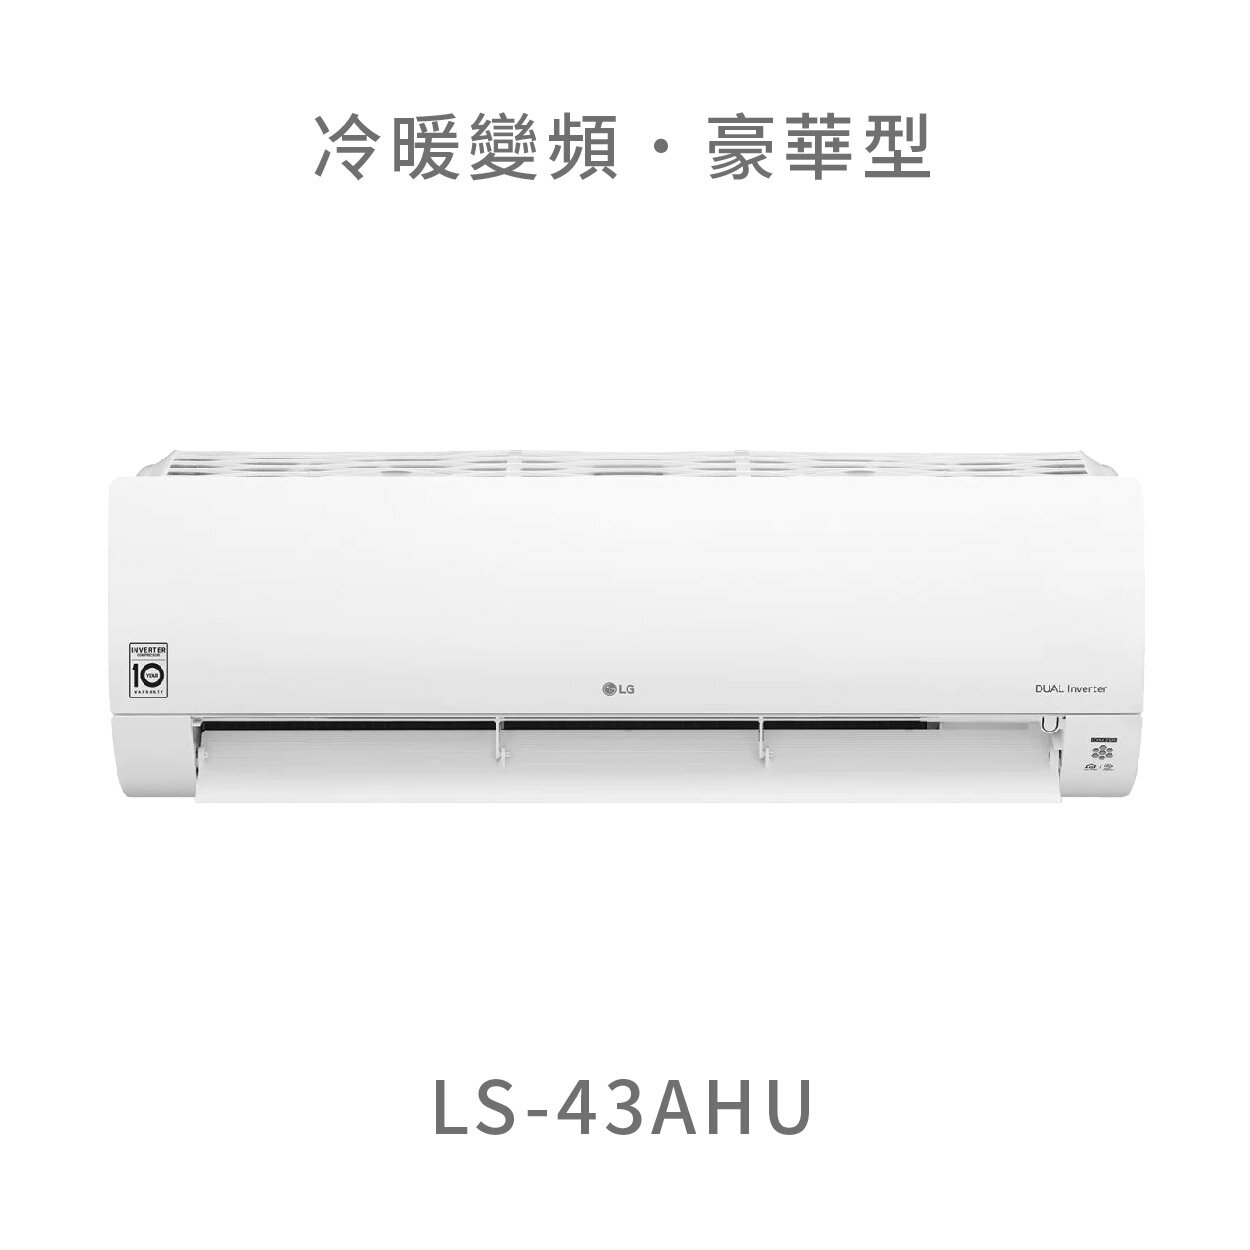 【點數10%回饋】【標準安裝費用另計】LG LS-43AHU 4.3kw WiFi雙迴轉變頻空調 - 豪華清淨型 冷暖